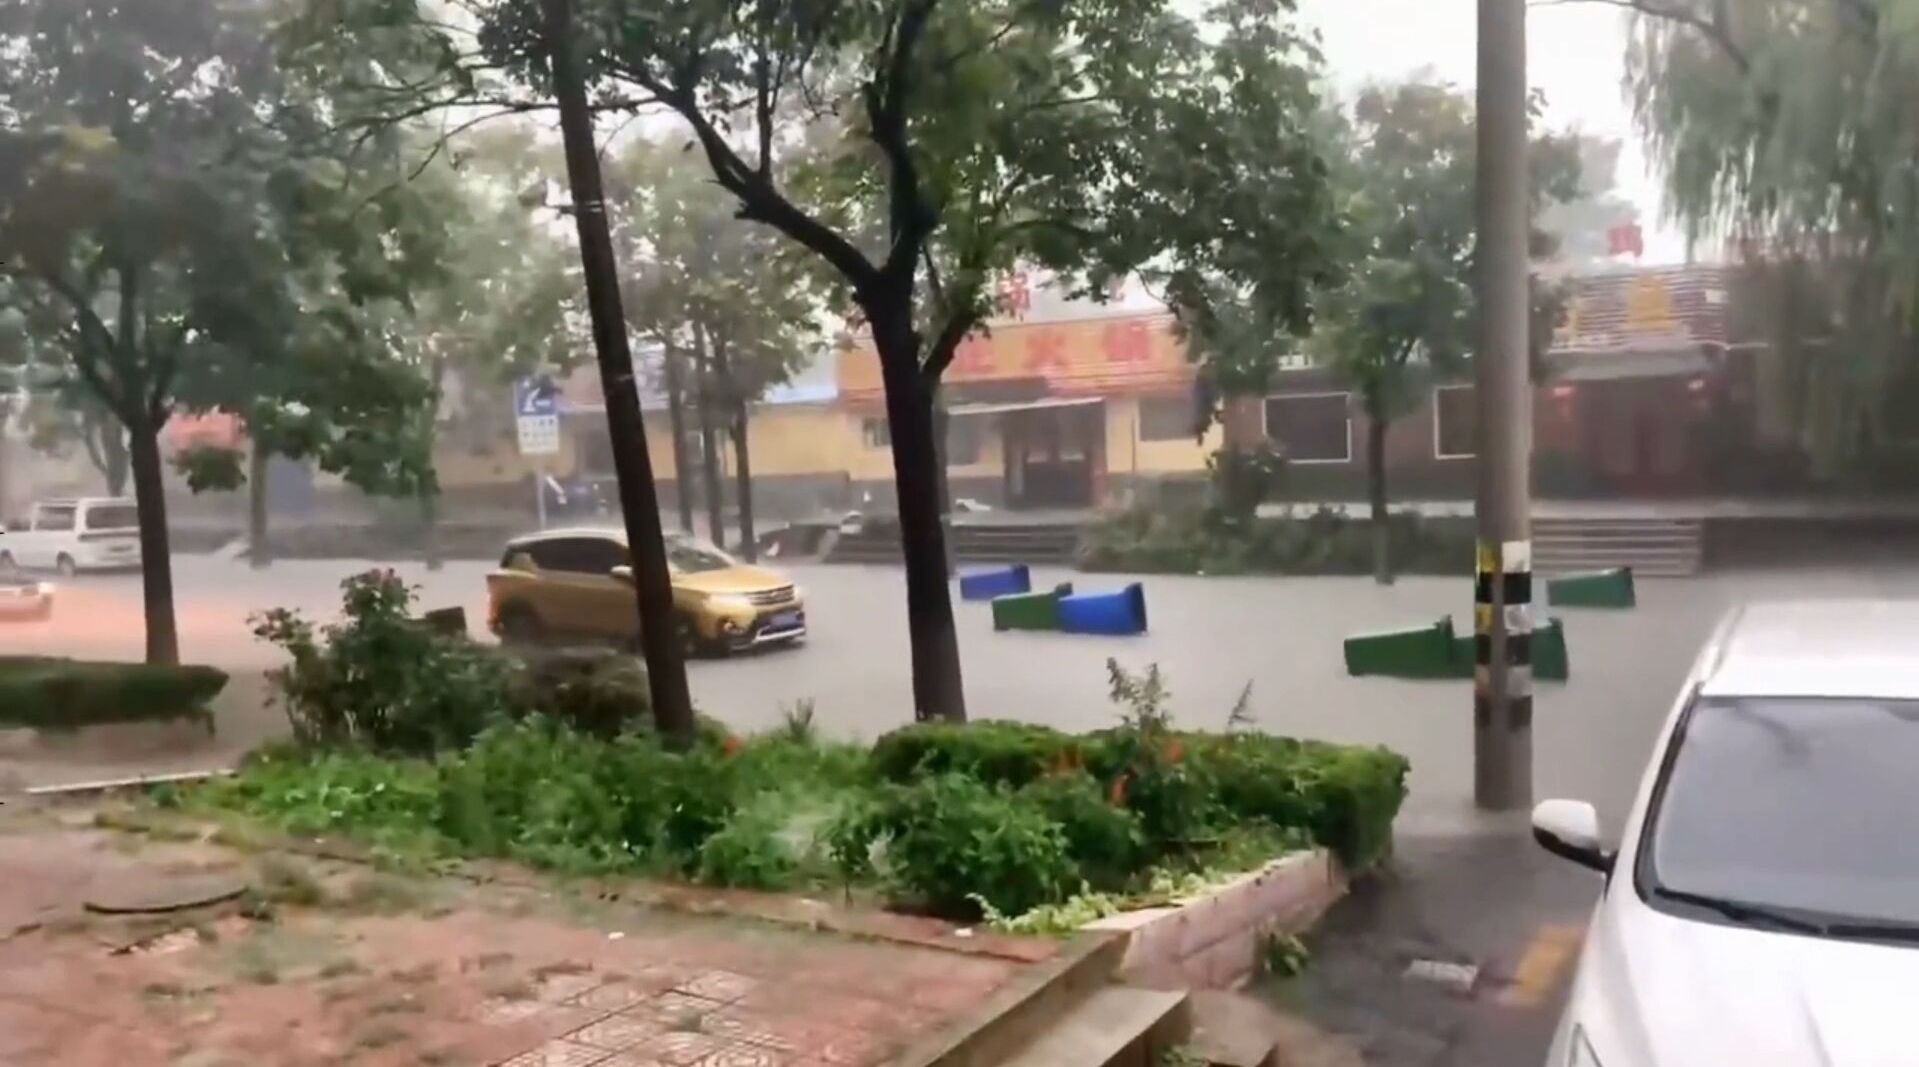 暴雨突袭济南，这一路段水位高于路面近一米 车辆被冲出几米远_齐鲁原创_山东新闻_新闻_齐鲁网